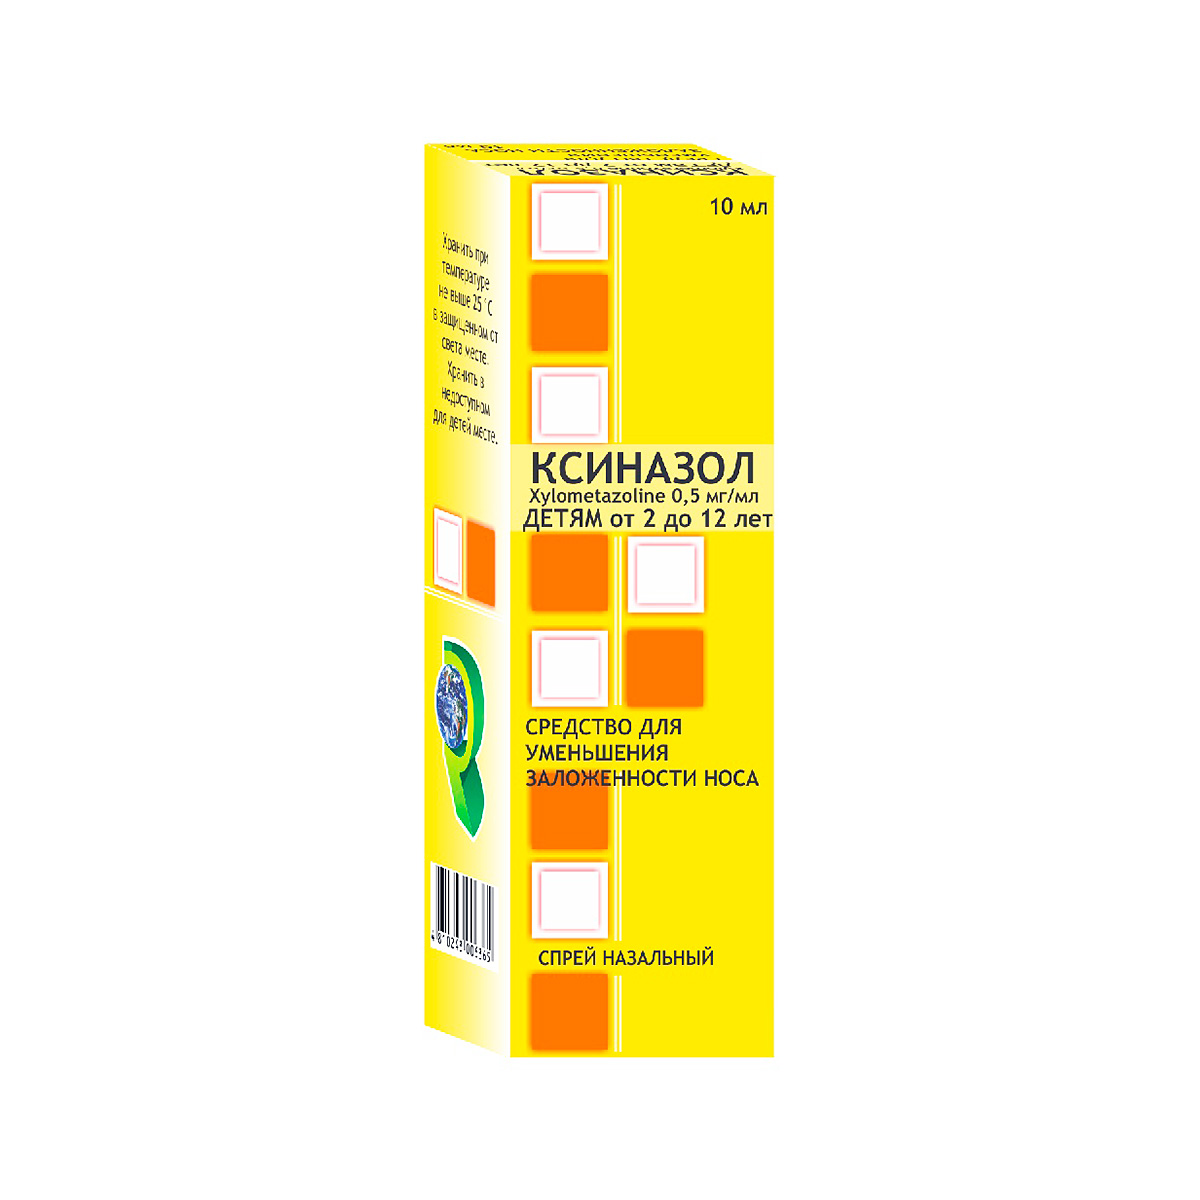 Ксиназол 0,5 мг/мл спрей назальный 10 мл флакон 1 шт